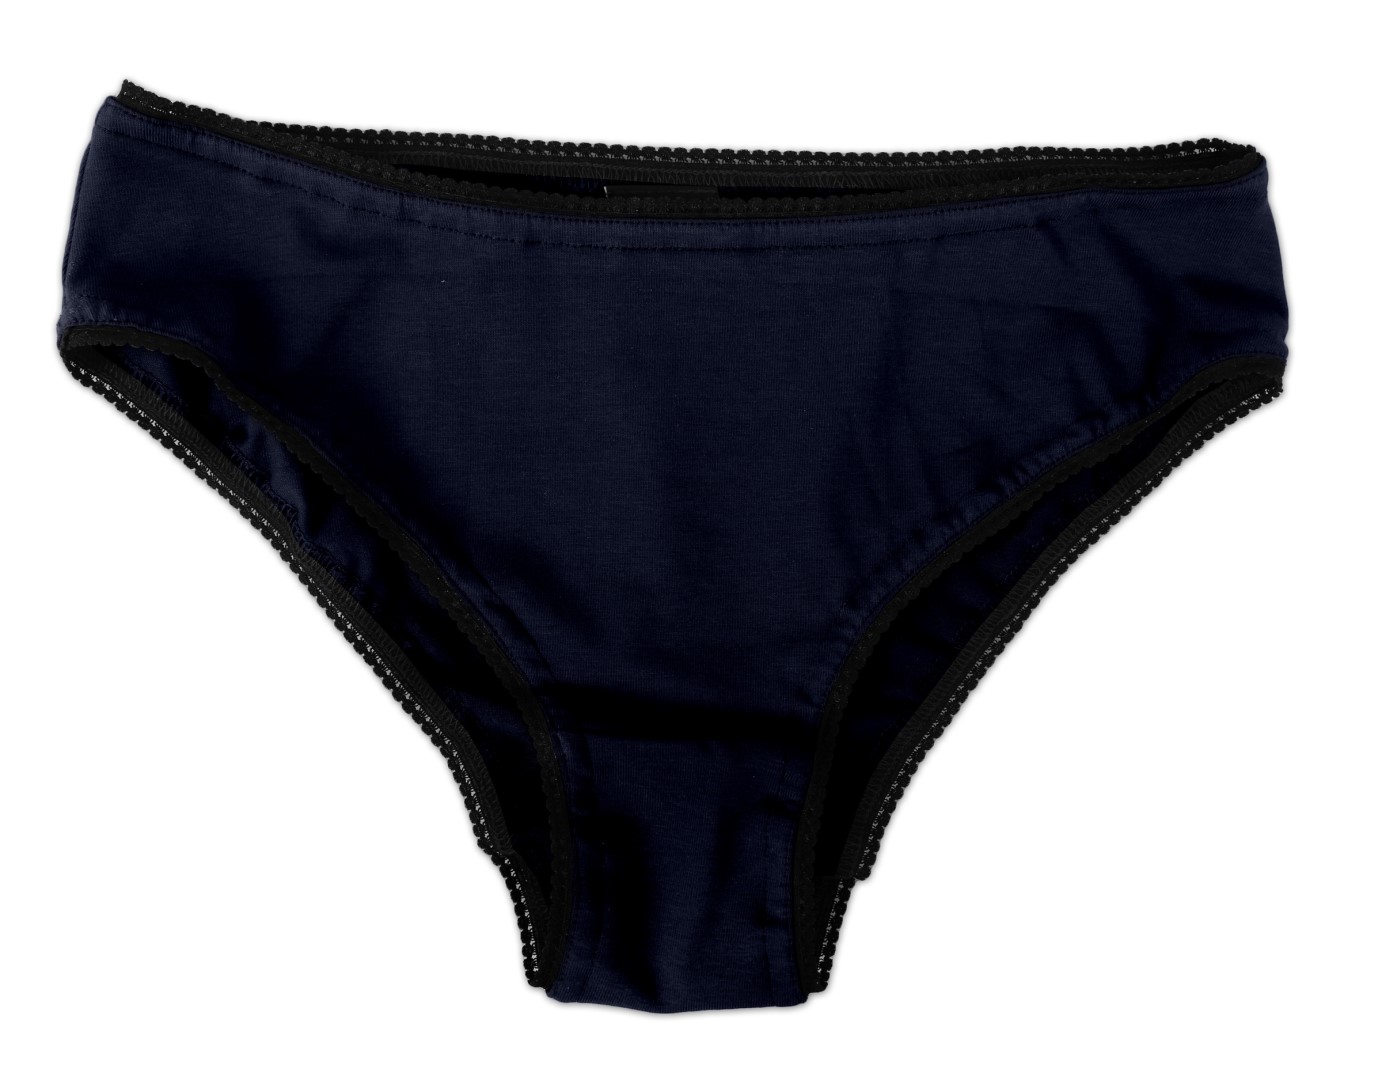 Women's cotton panties, high cut, dark blue